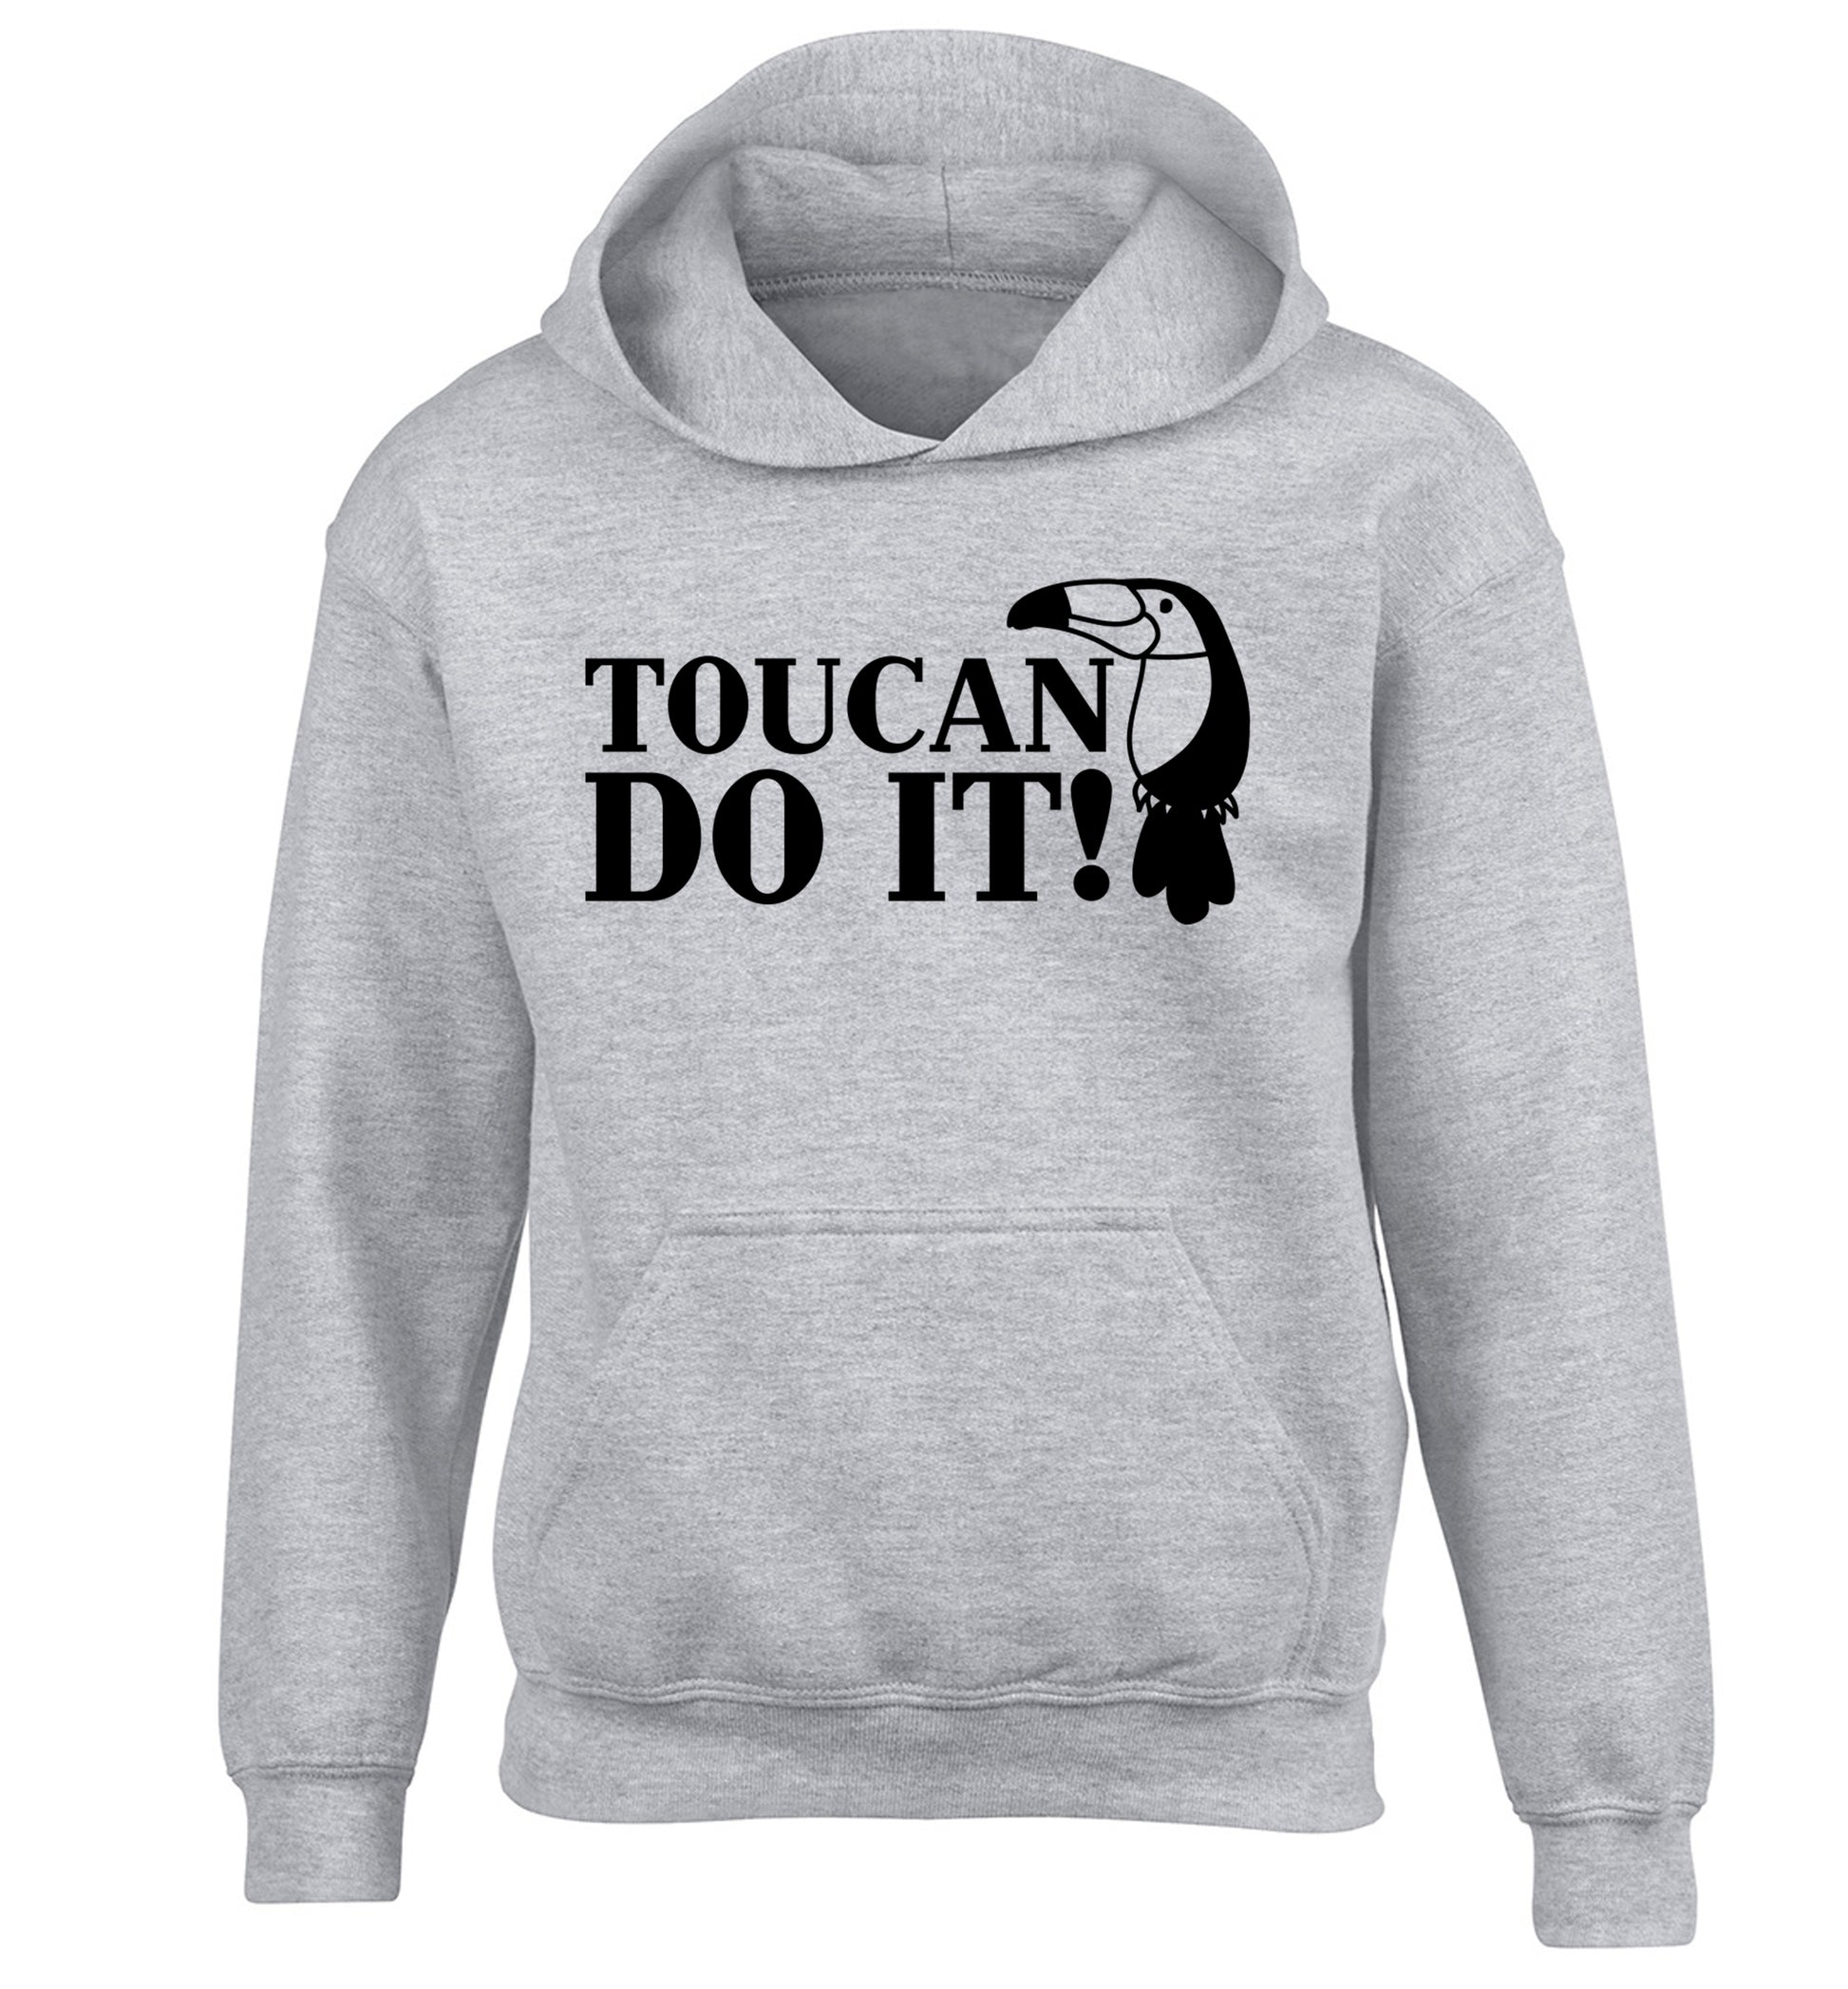 Toucan do it! children's grey hoodie 12-13 Years